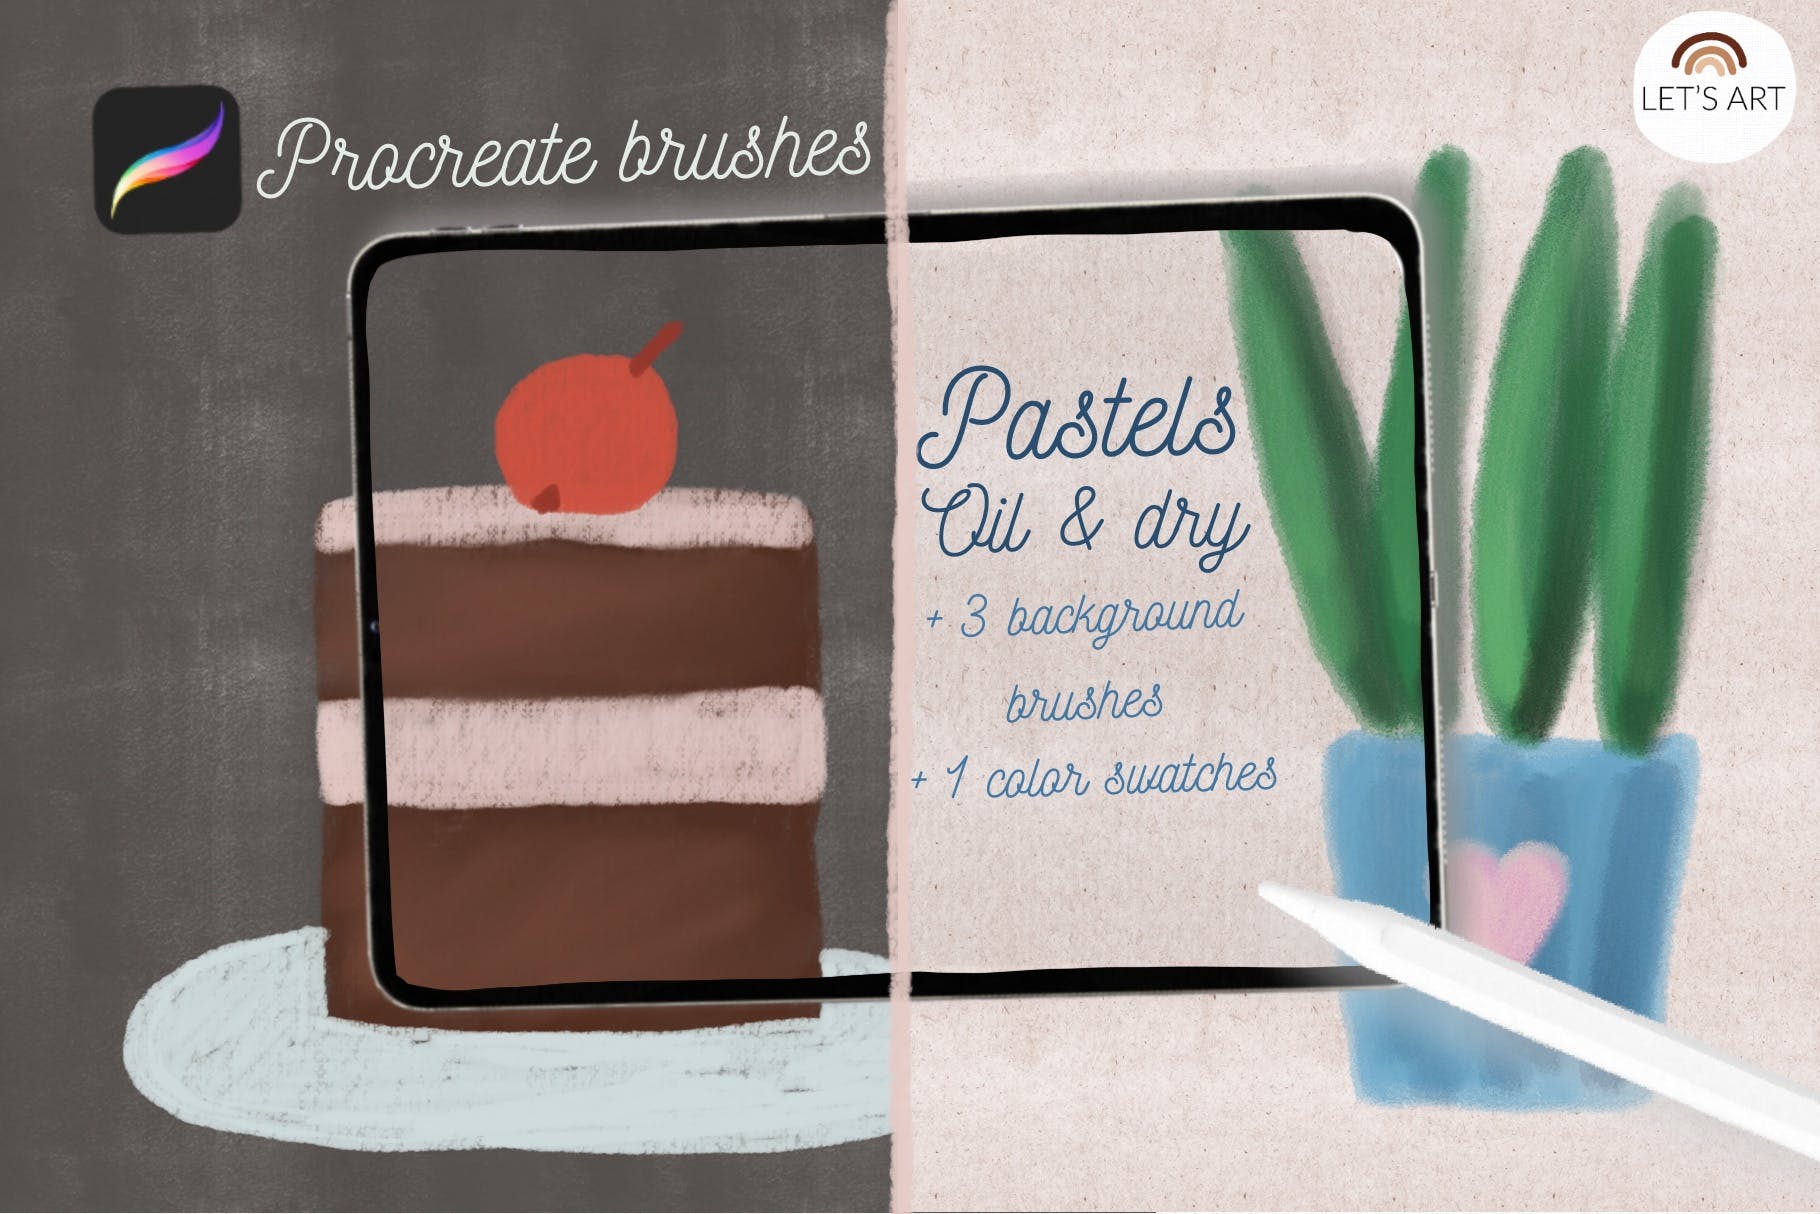 适用于iPad Procreate的蜡笔纹理笔刷 Pastels brushes for Procreate iPad 笔刷资源 第2张